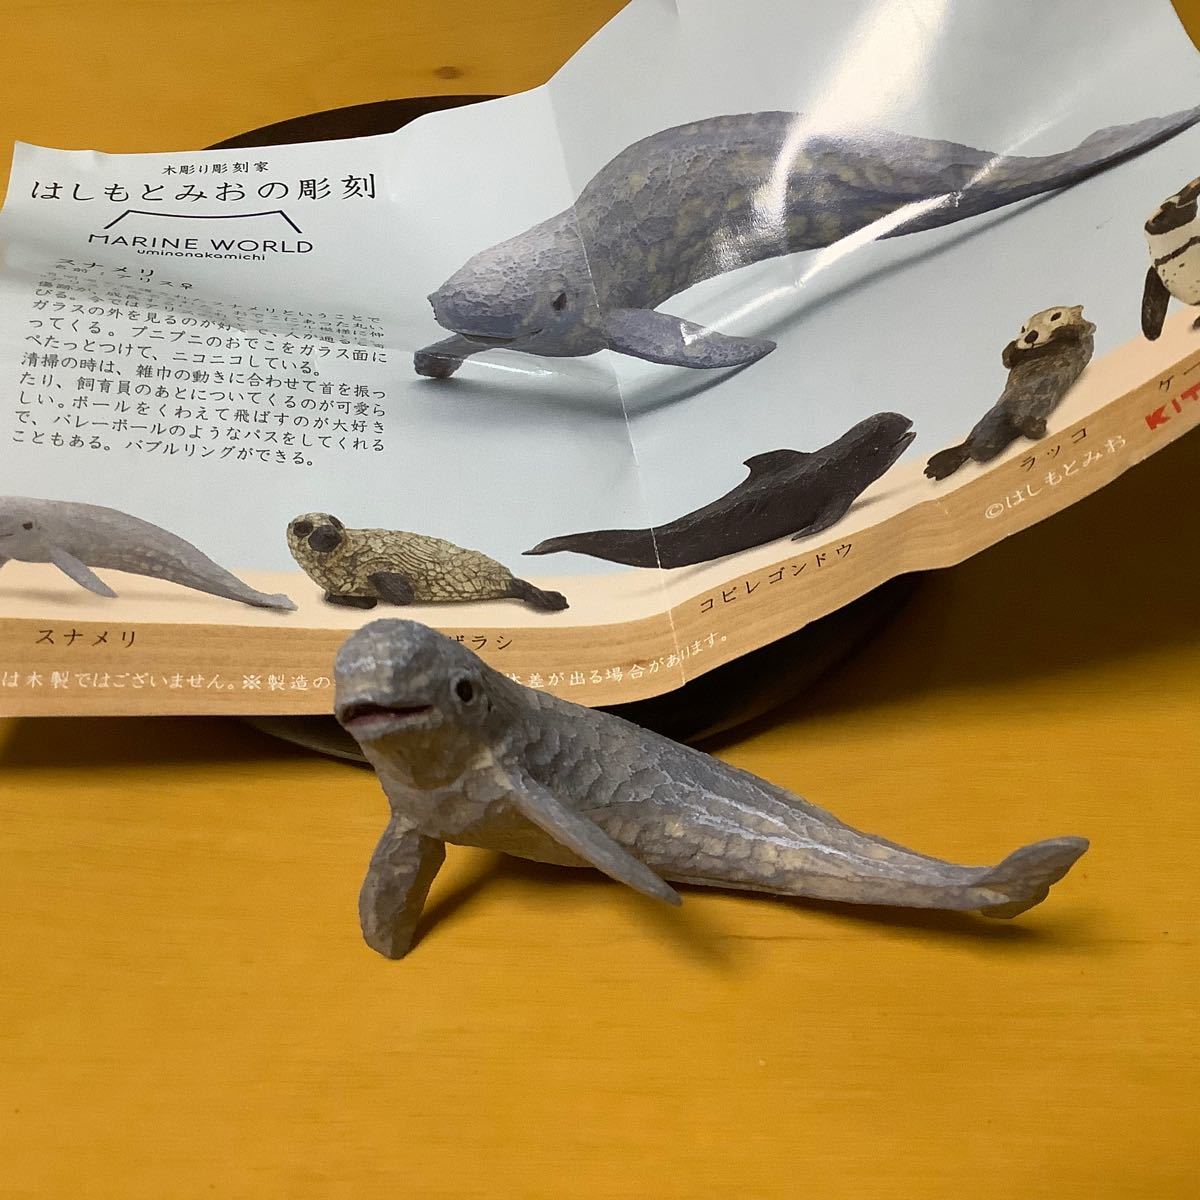 ガチャ はしもと みお カピバラたち5種類のカプセルトイが沖縄「DMMかりゆし水族館」限定で4月下旬に発売